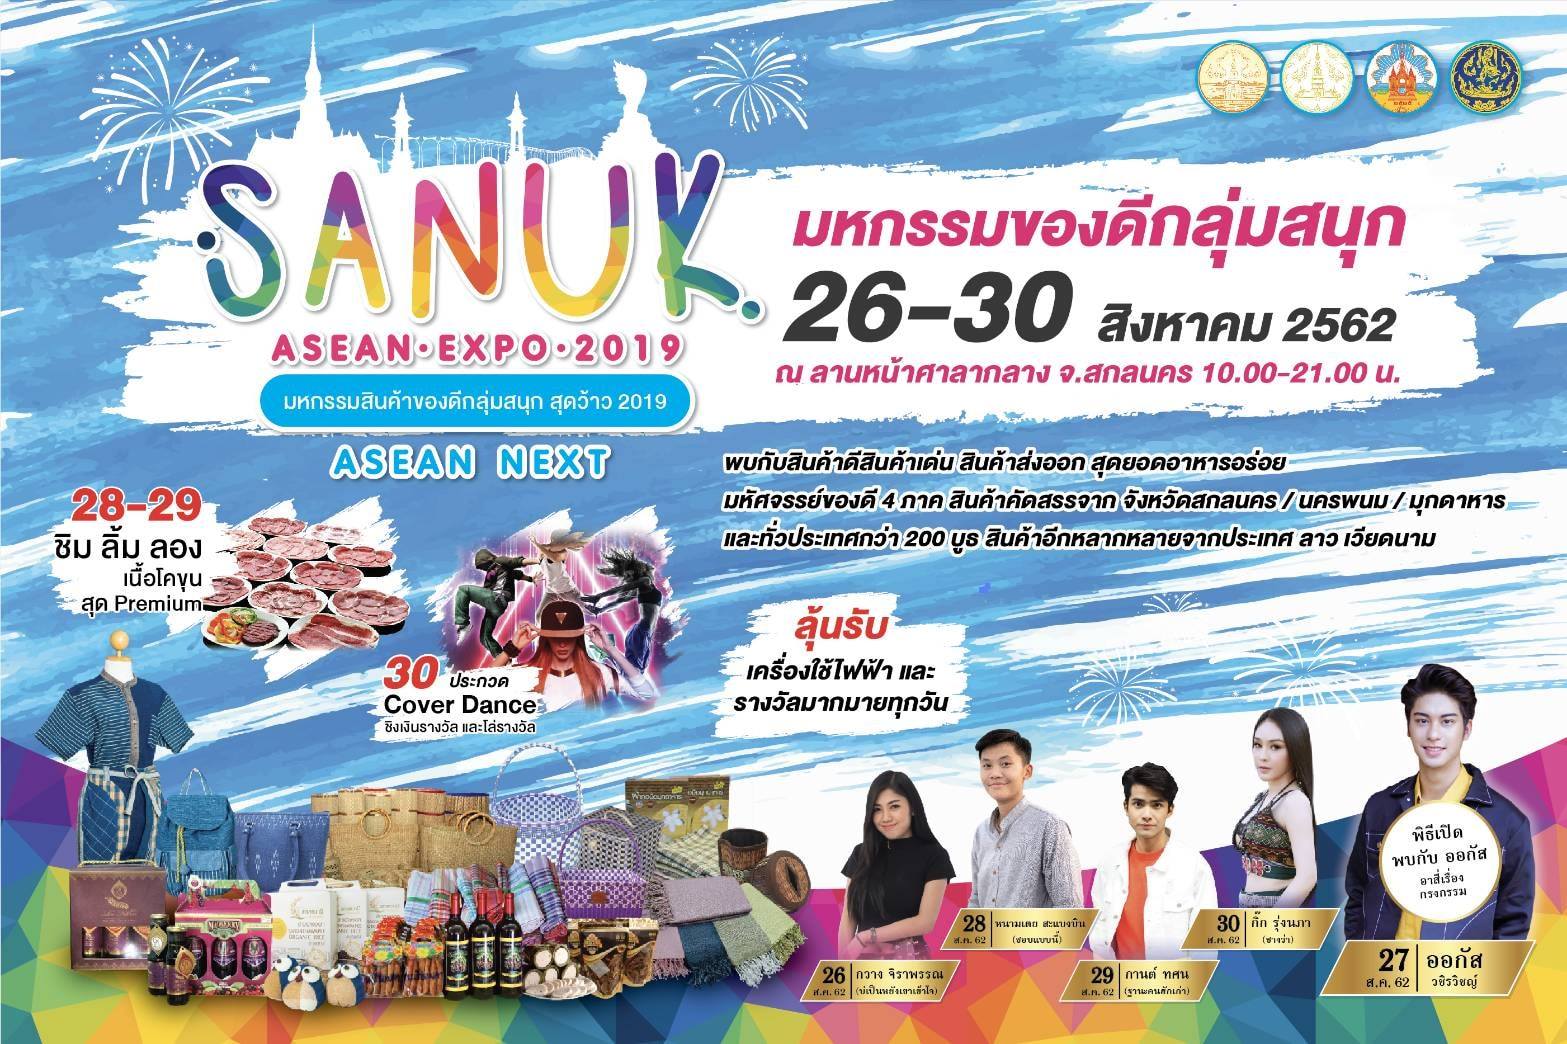 SANUK ASEAN EXPO 2019